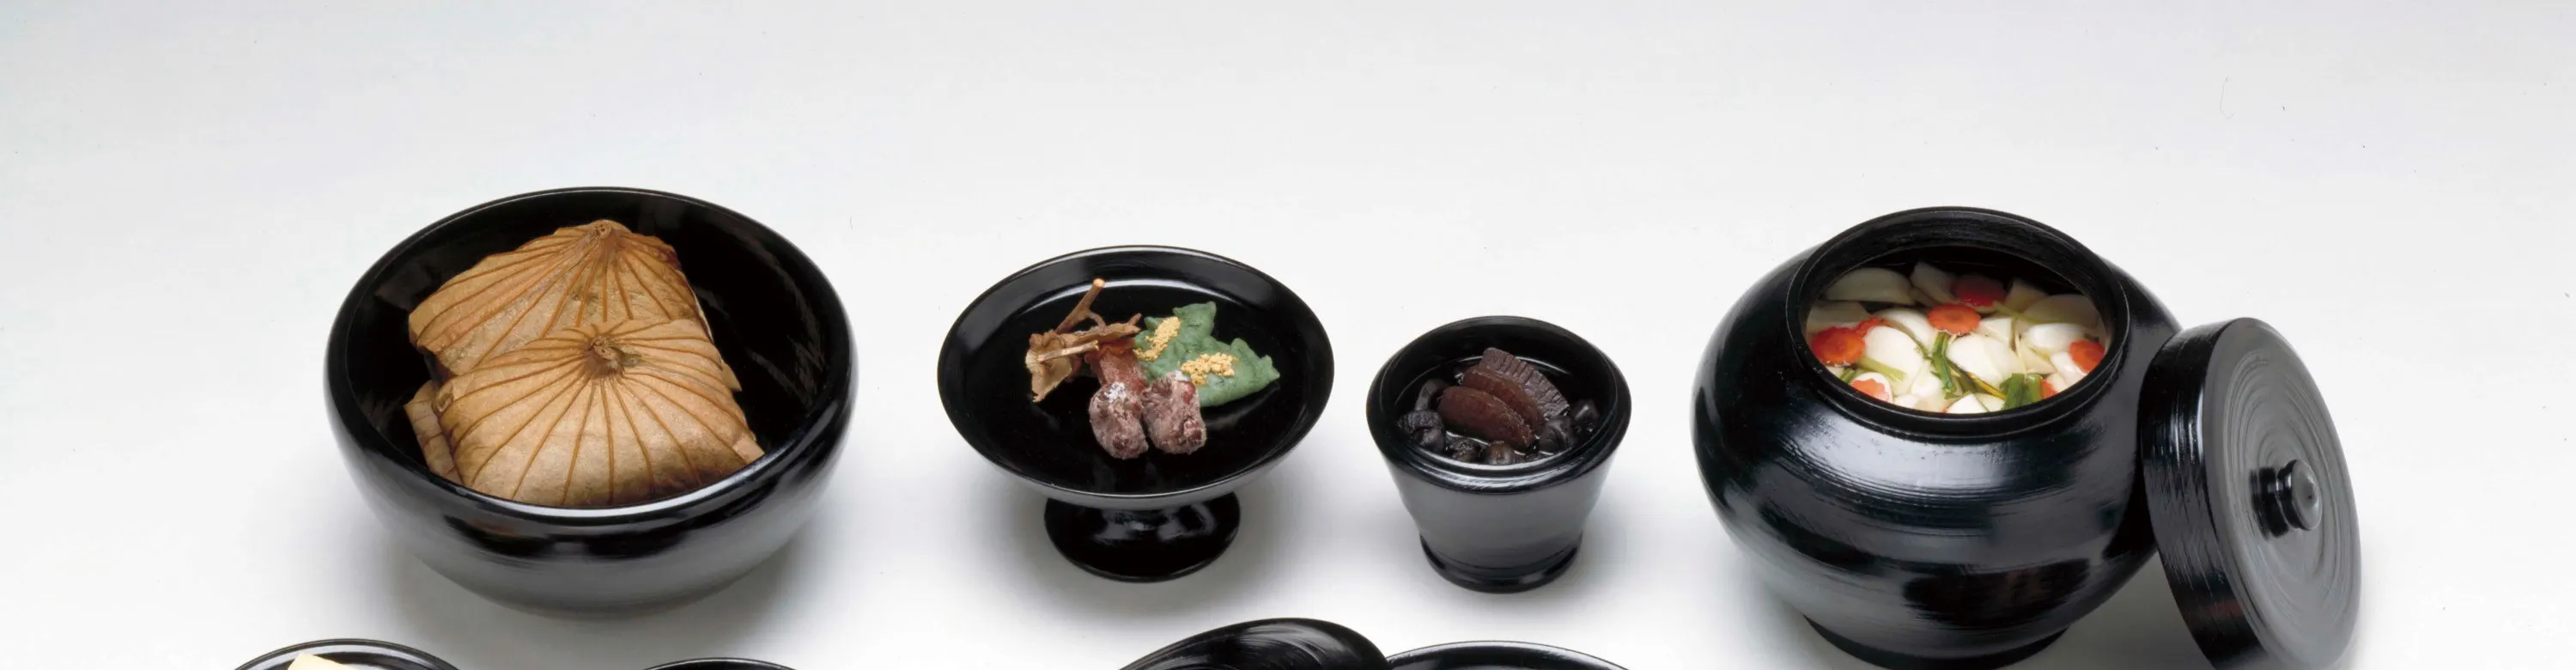 上野 国立科学博物館 和食展 3枚 - 美術館